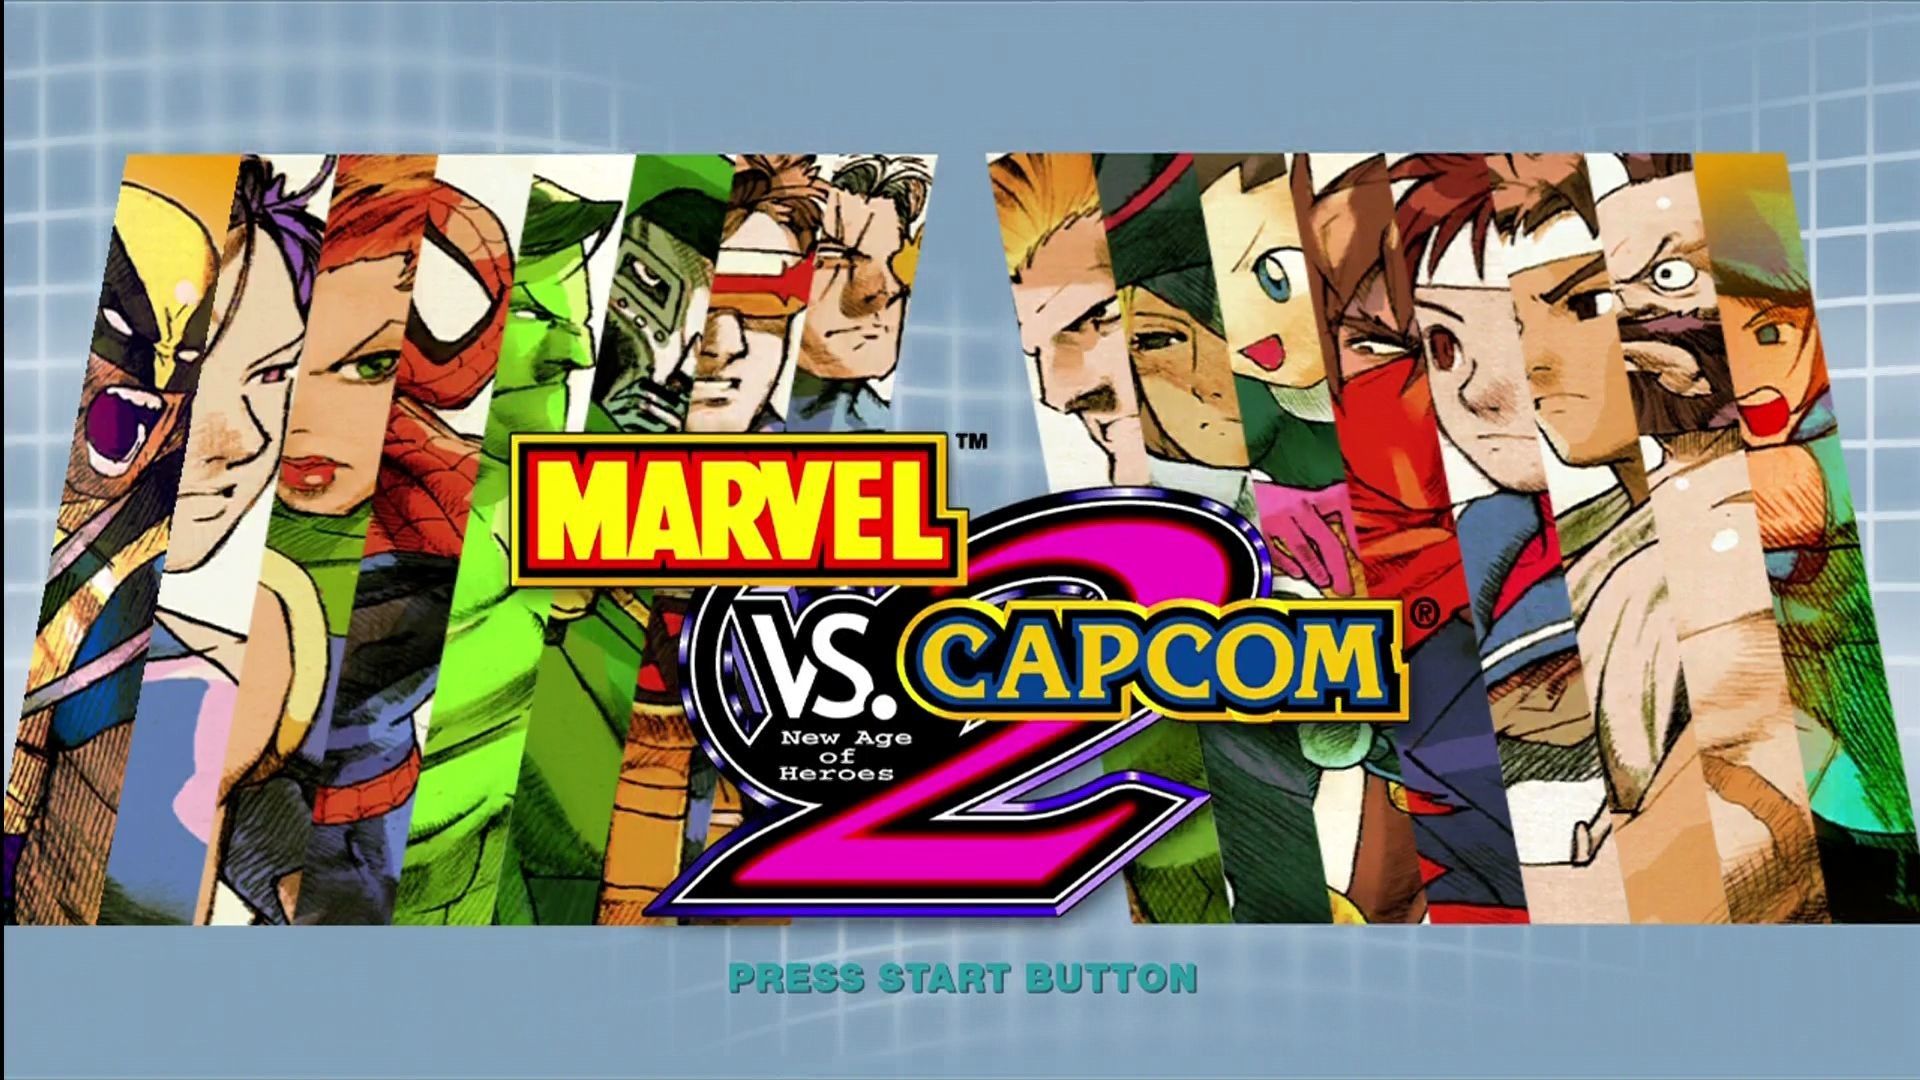 Marvel vs Capcom Wallpapers  Download Marvel vs Capcom Wallpapers  Marvel  vs Capcom Desktop Wallpapers in High Resolution Kingdom Hearts Insider